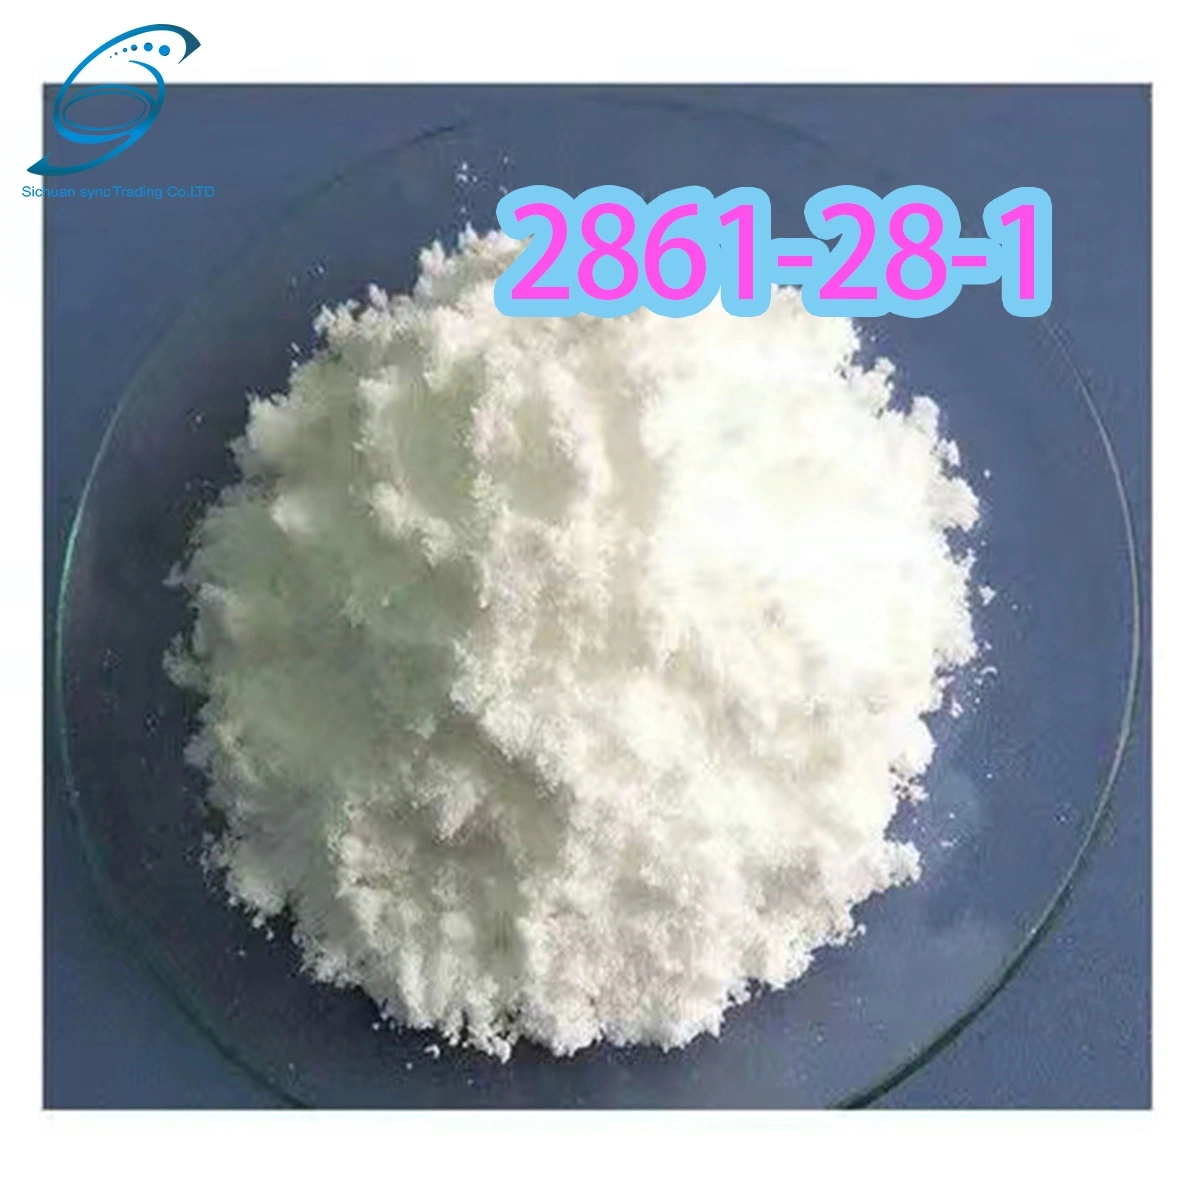 Alta qualidade 2-(1,3-benzodioxol-5-yl) CAS 2861-28-1/ácido acético ODM Pharmaceutical Intermediate BMK PMK China fornecimento de fábrica (1, 3-Benzodioxol-5-yl)